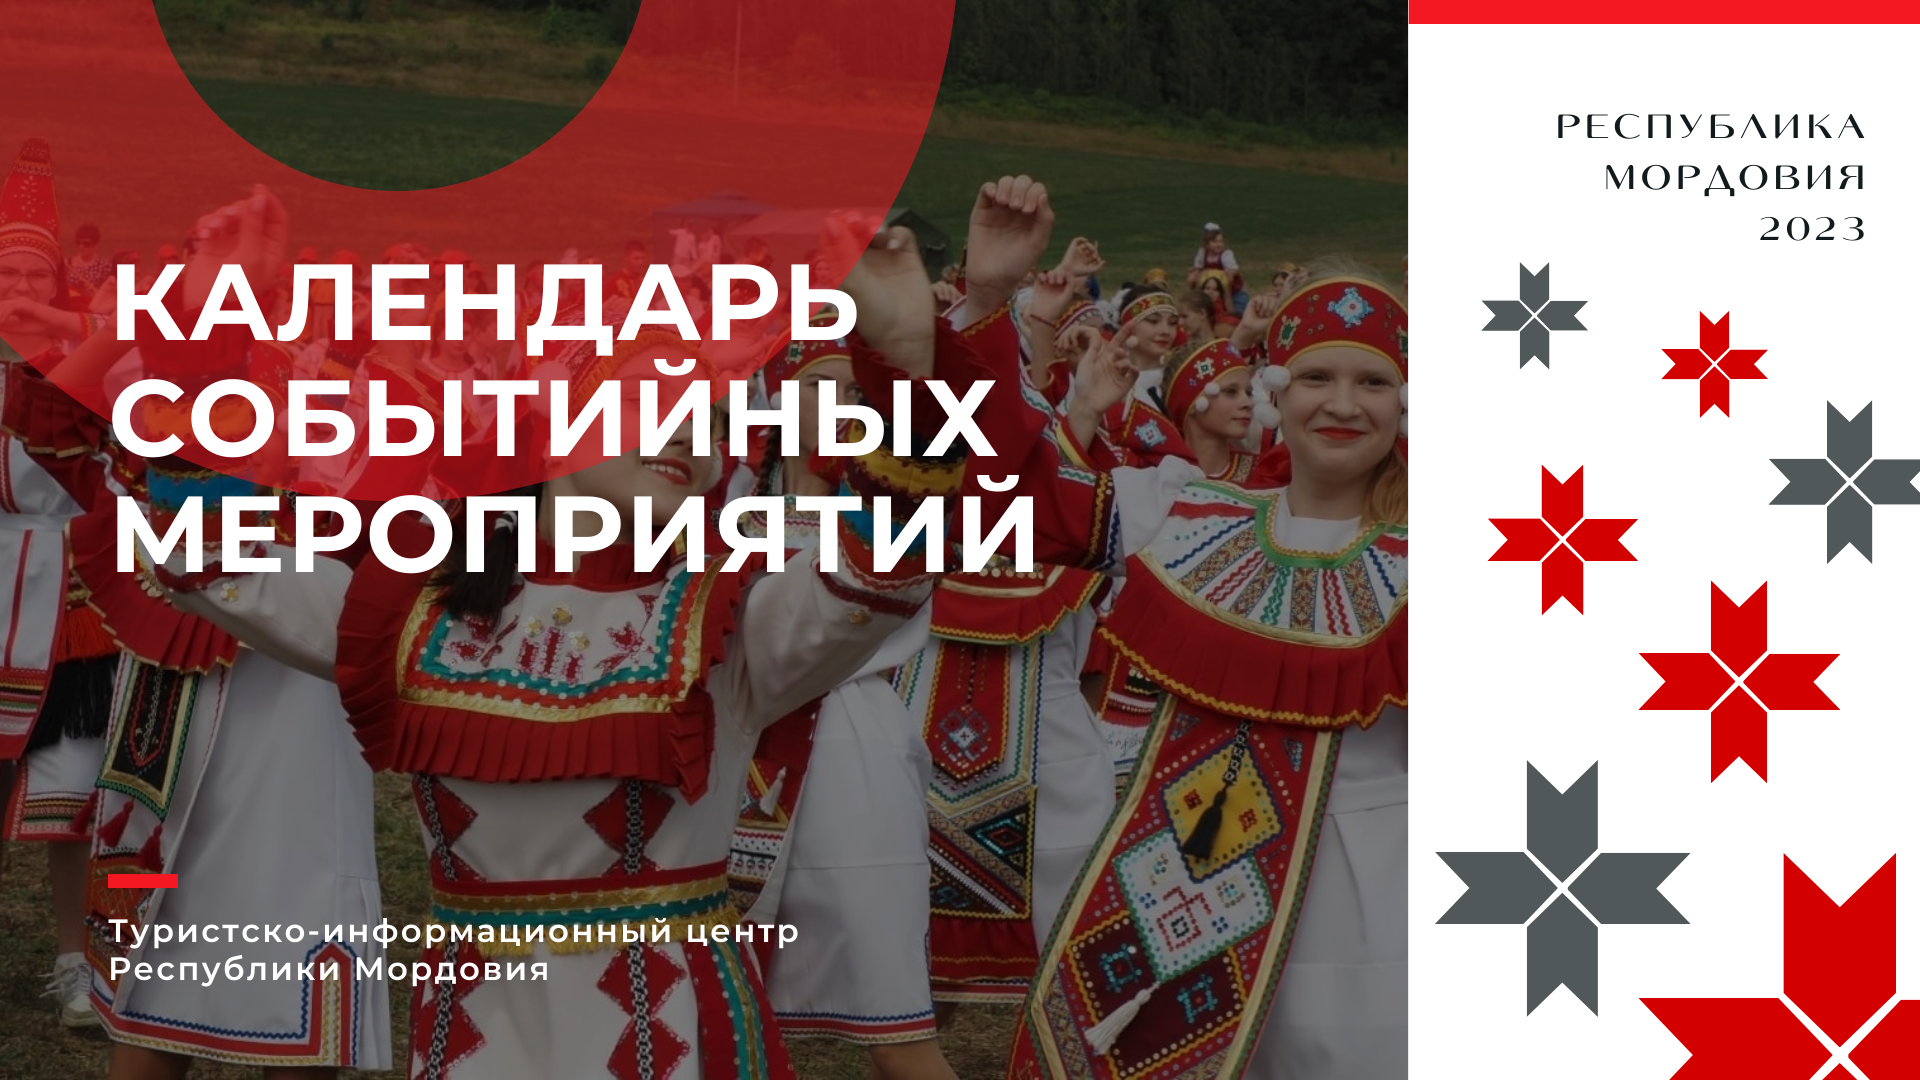 Календарь событийных мероприятий Республики Мордовия на 2023 год.